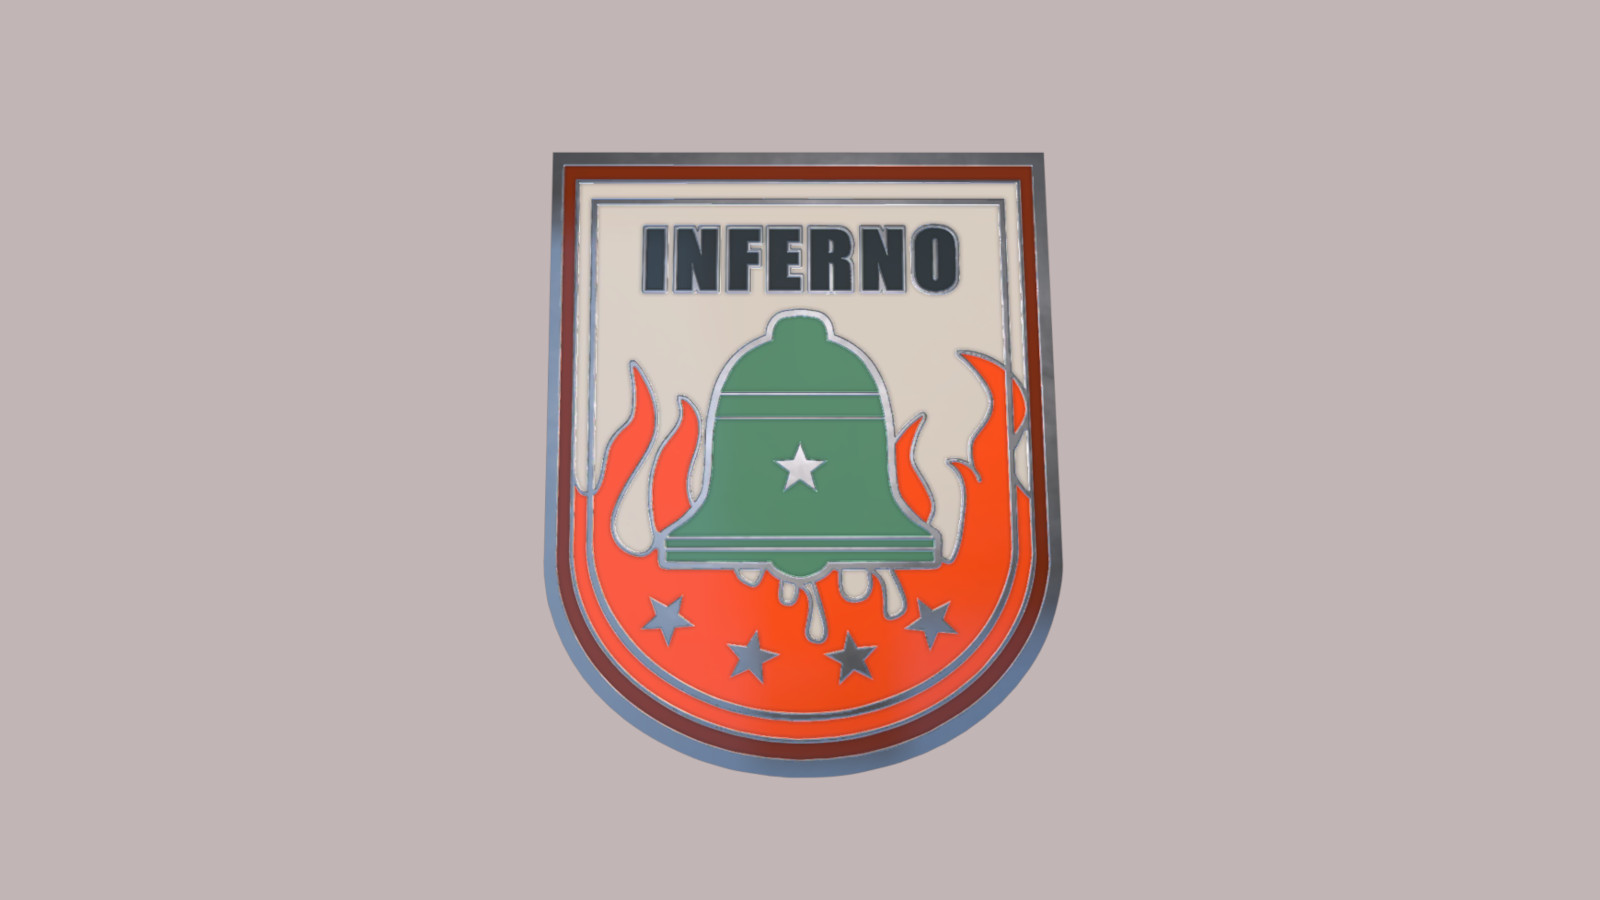 CS:GO - Series 1 - Inferno Collectible Pin